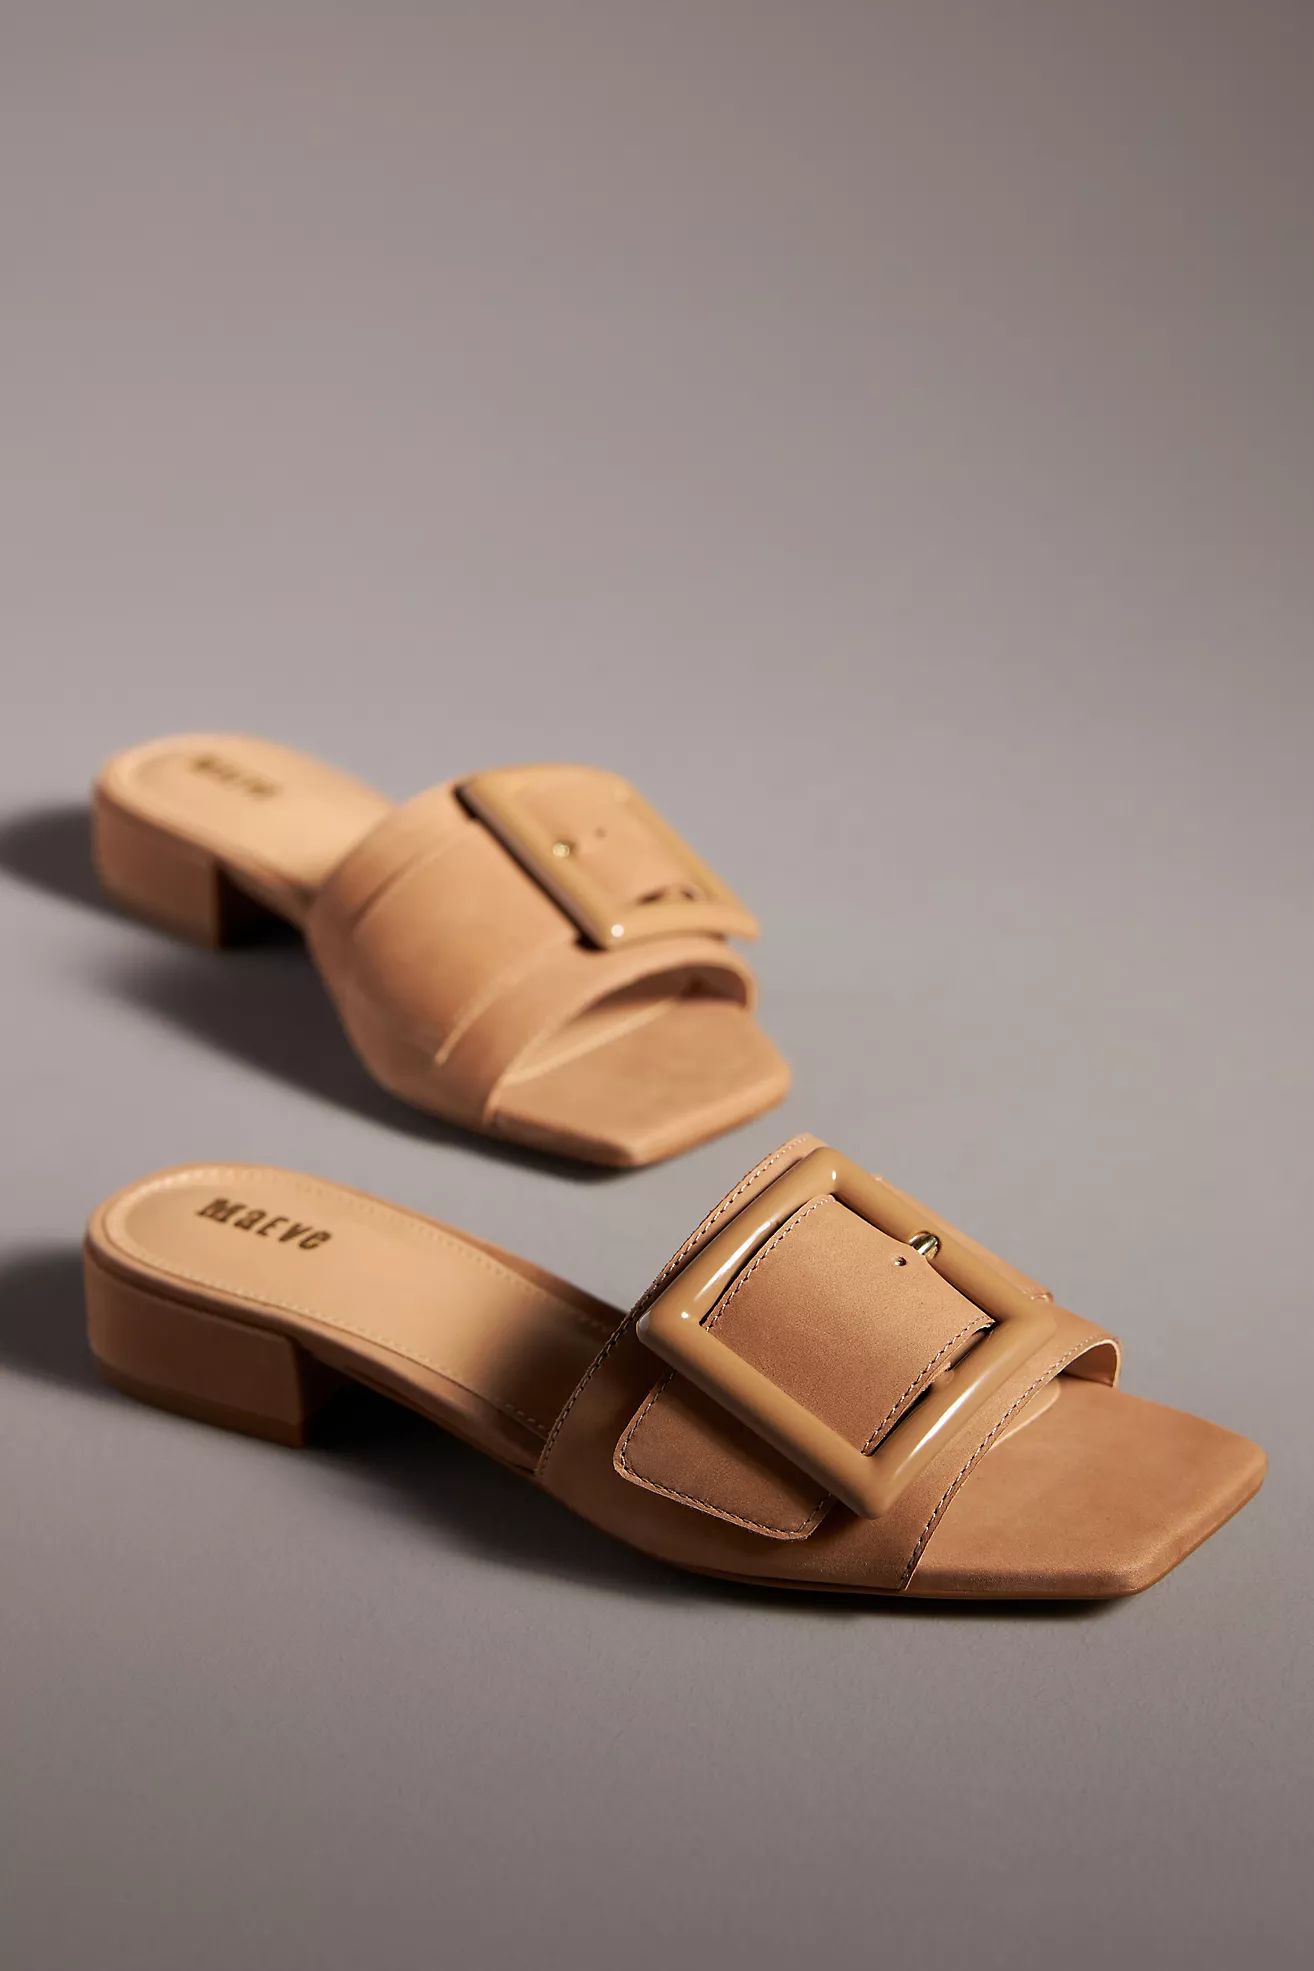 Maeve Buckle Slide Sandals | Anthropologie (US)